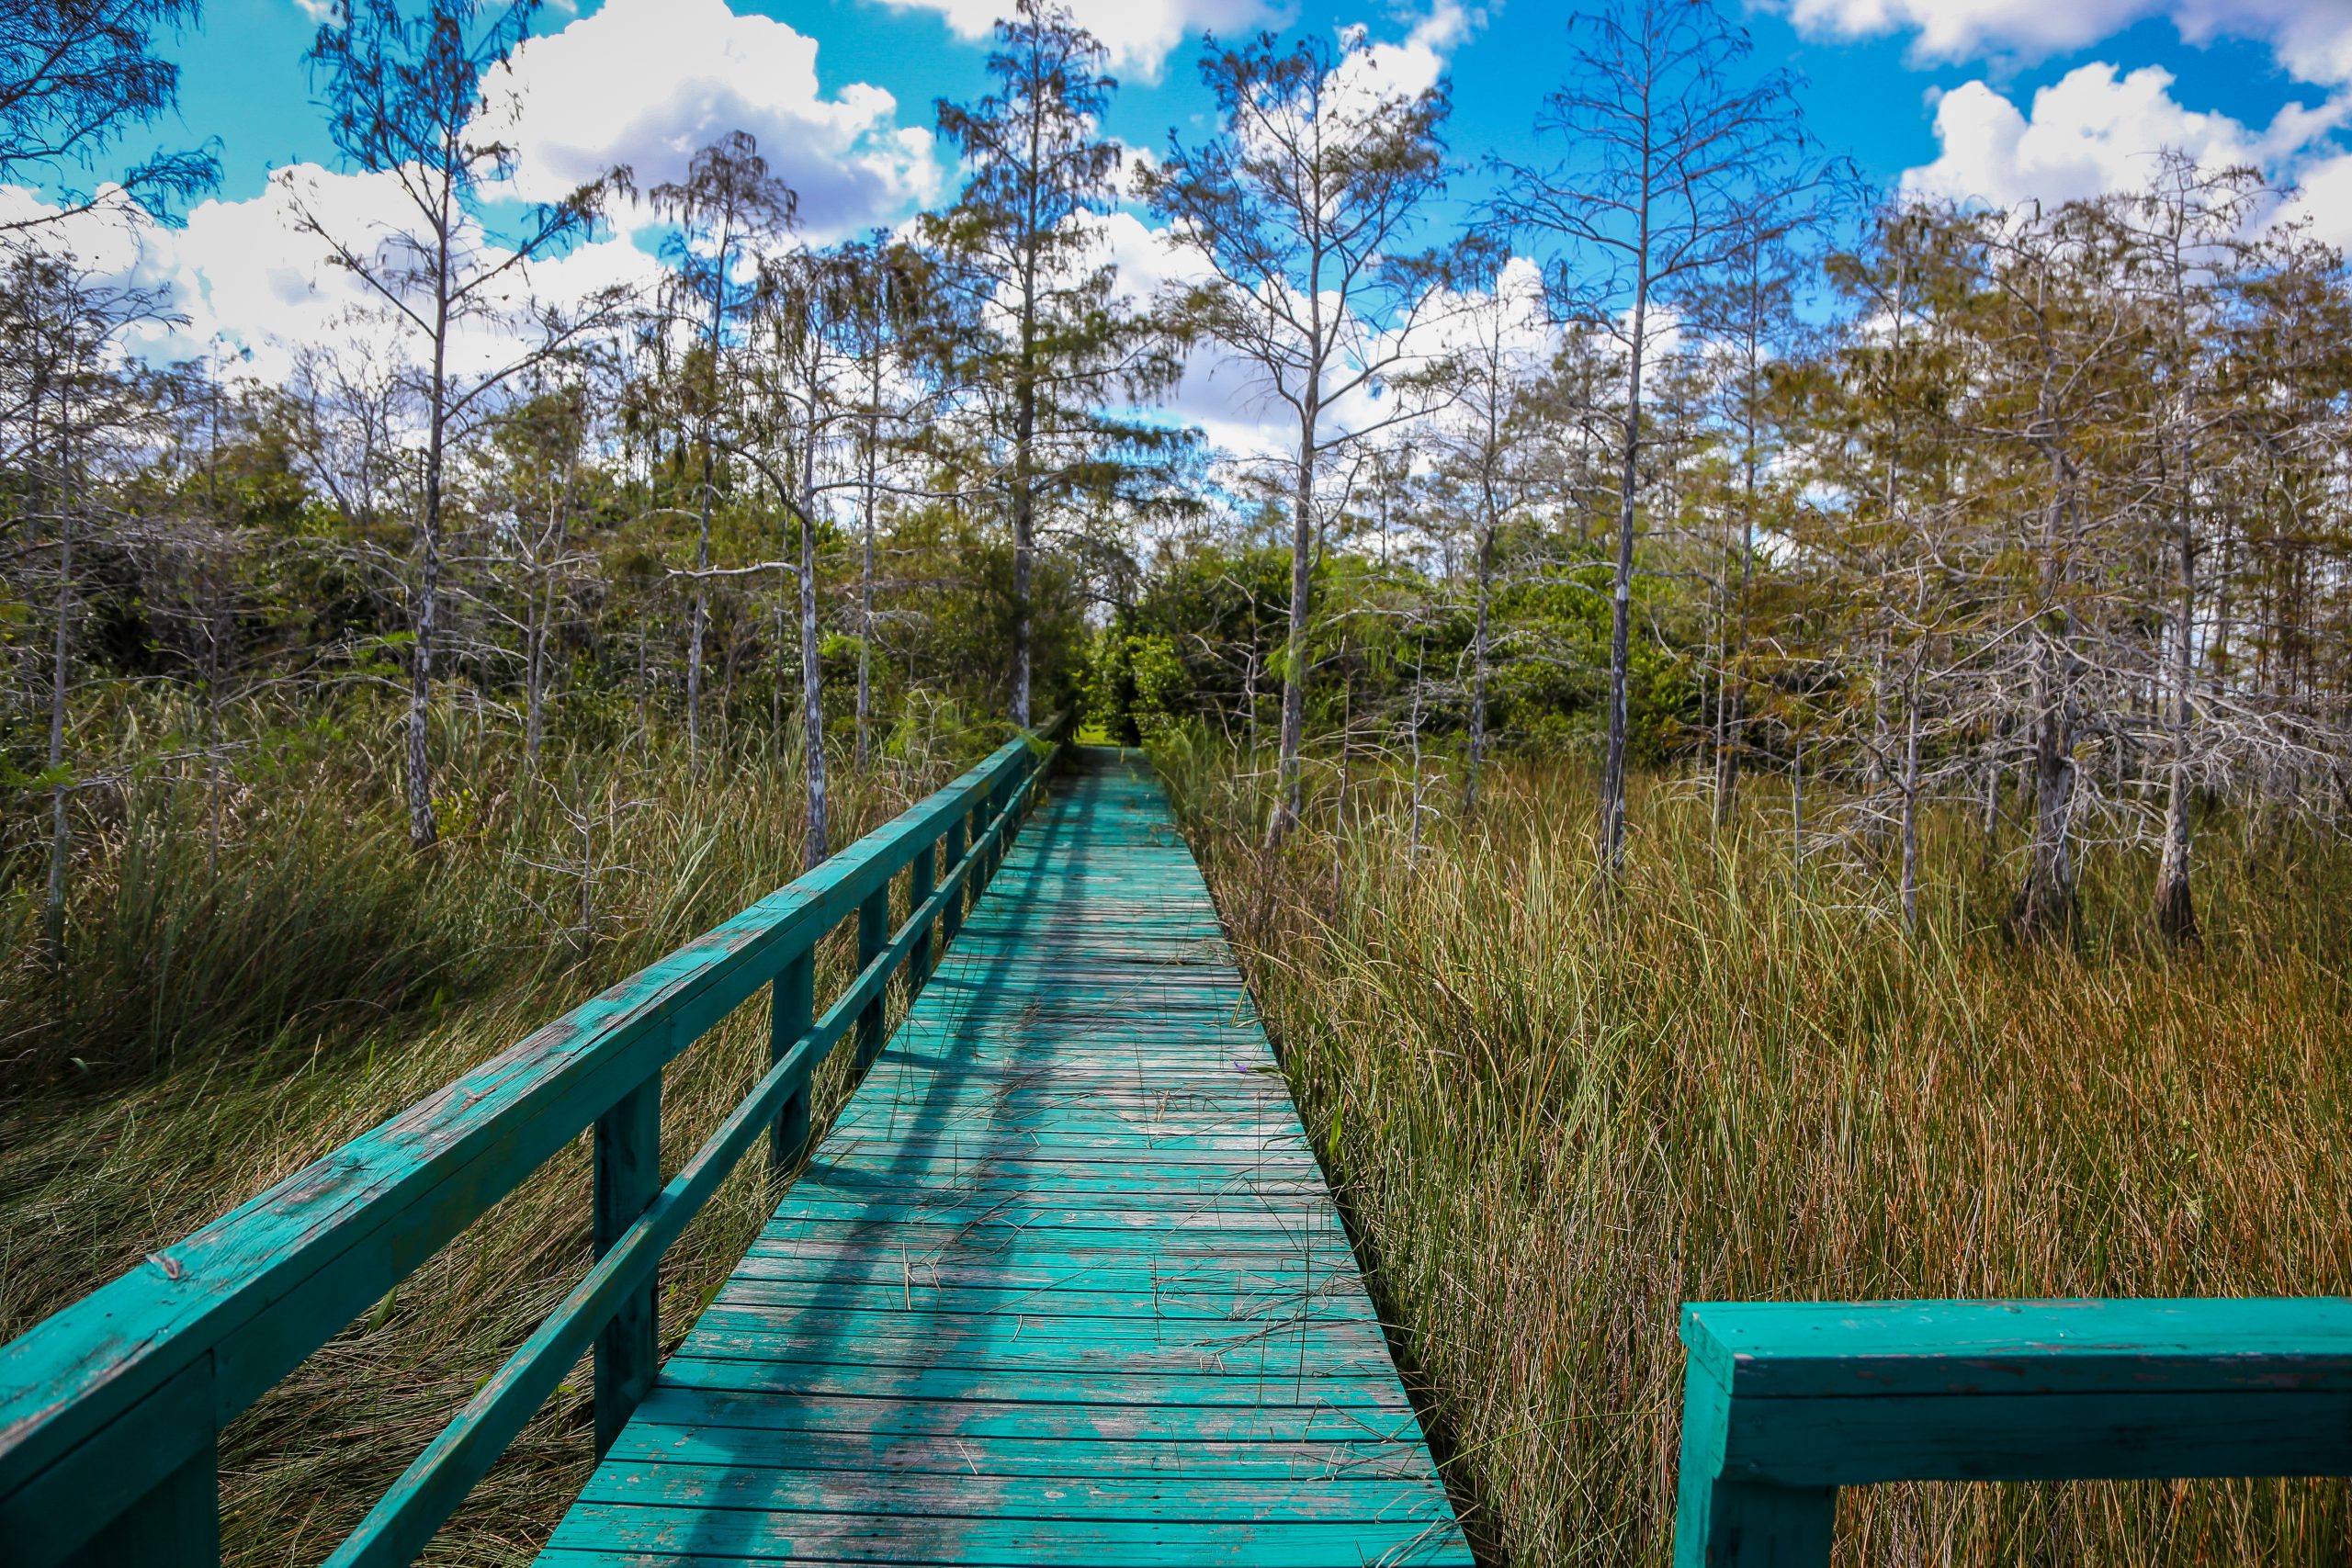 Wooden walkway over Everglades